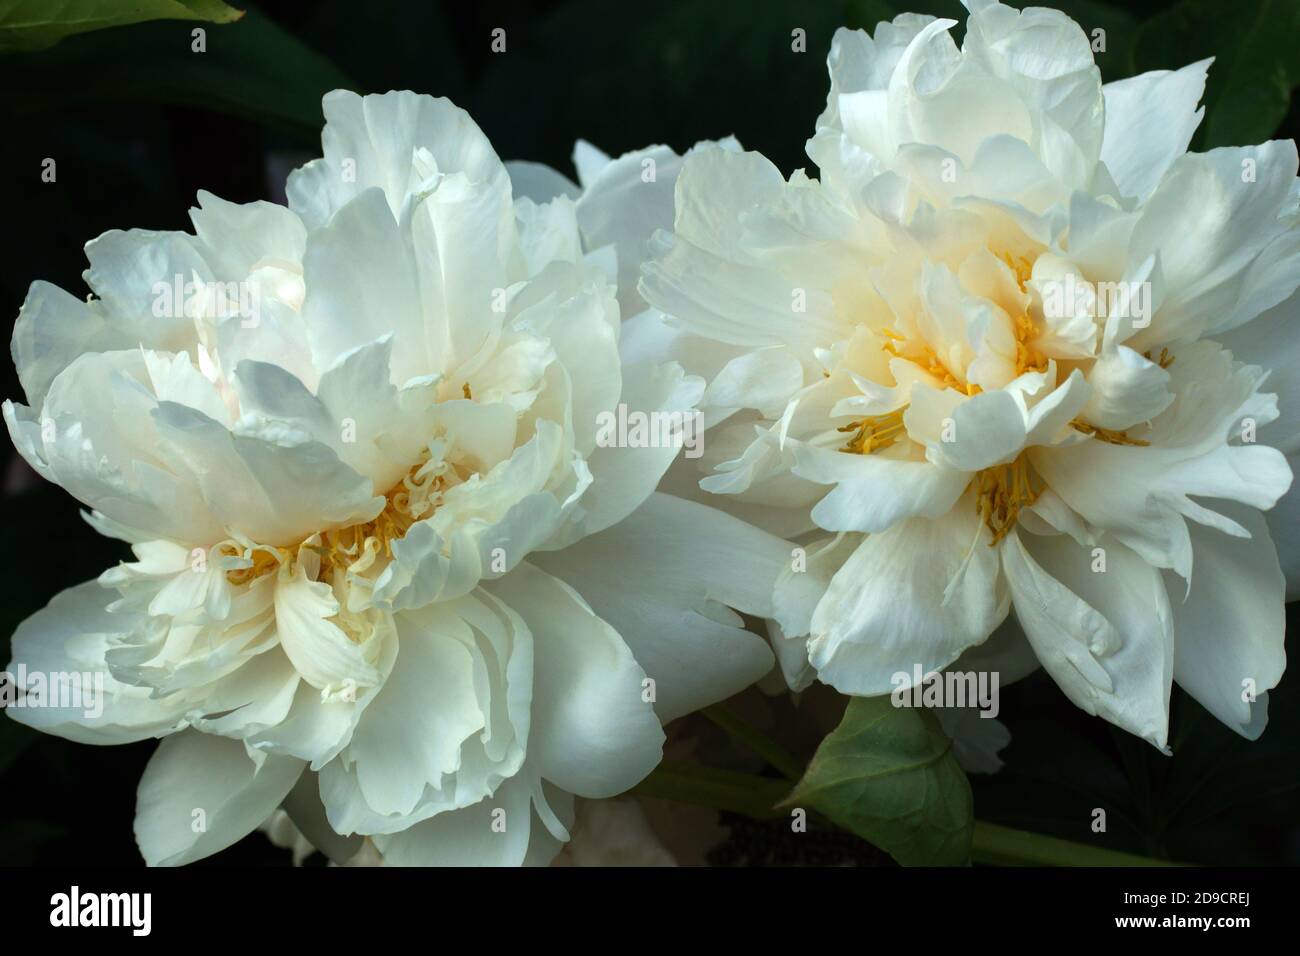 Paeonia Reine Deluxe. Doble flor de peonía blanca. Paeonia lactiflora (peonía China o peonía común de jardín). Foto de stock